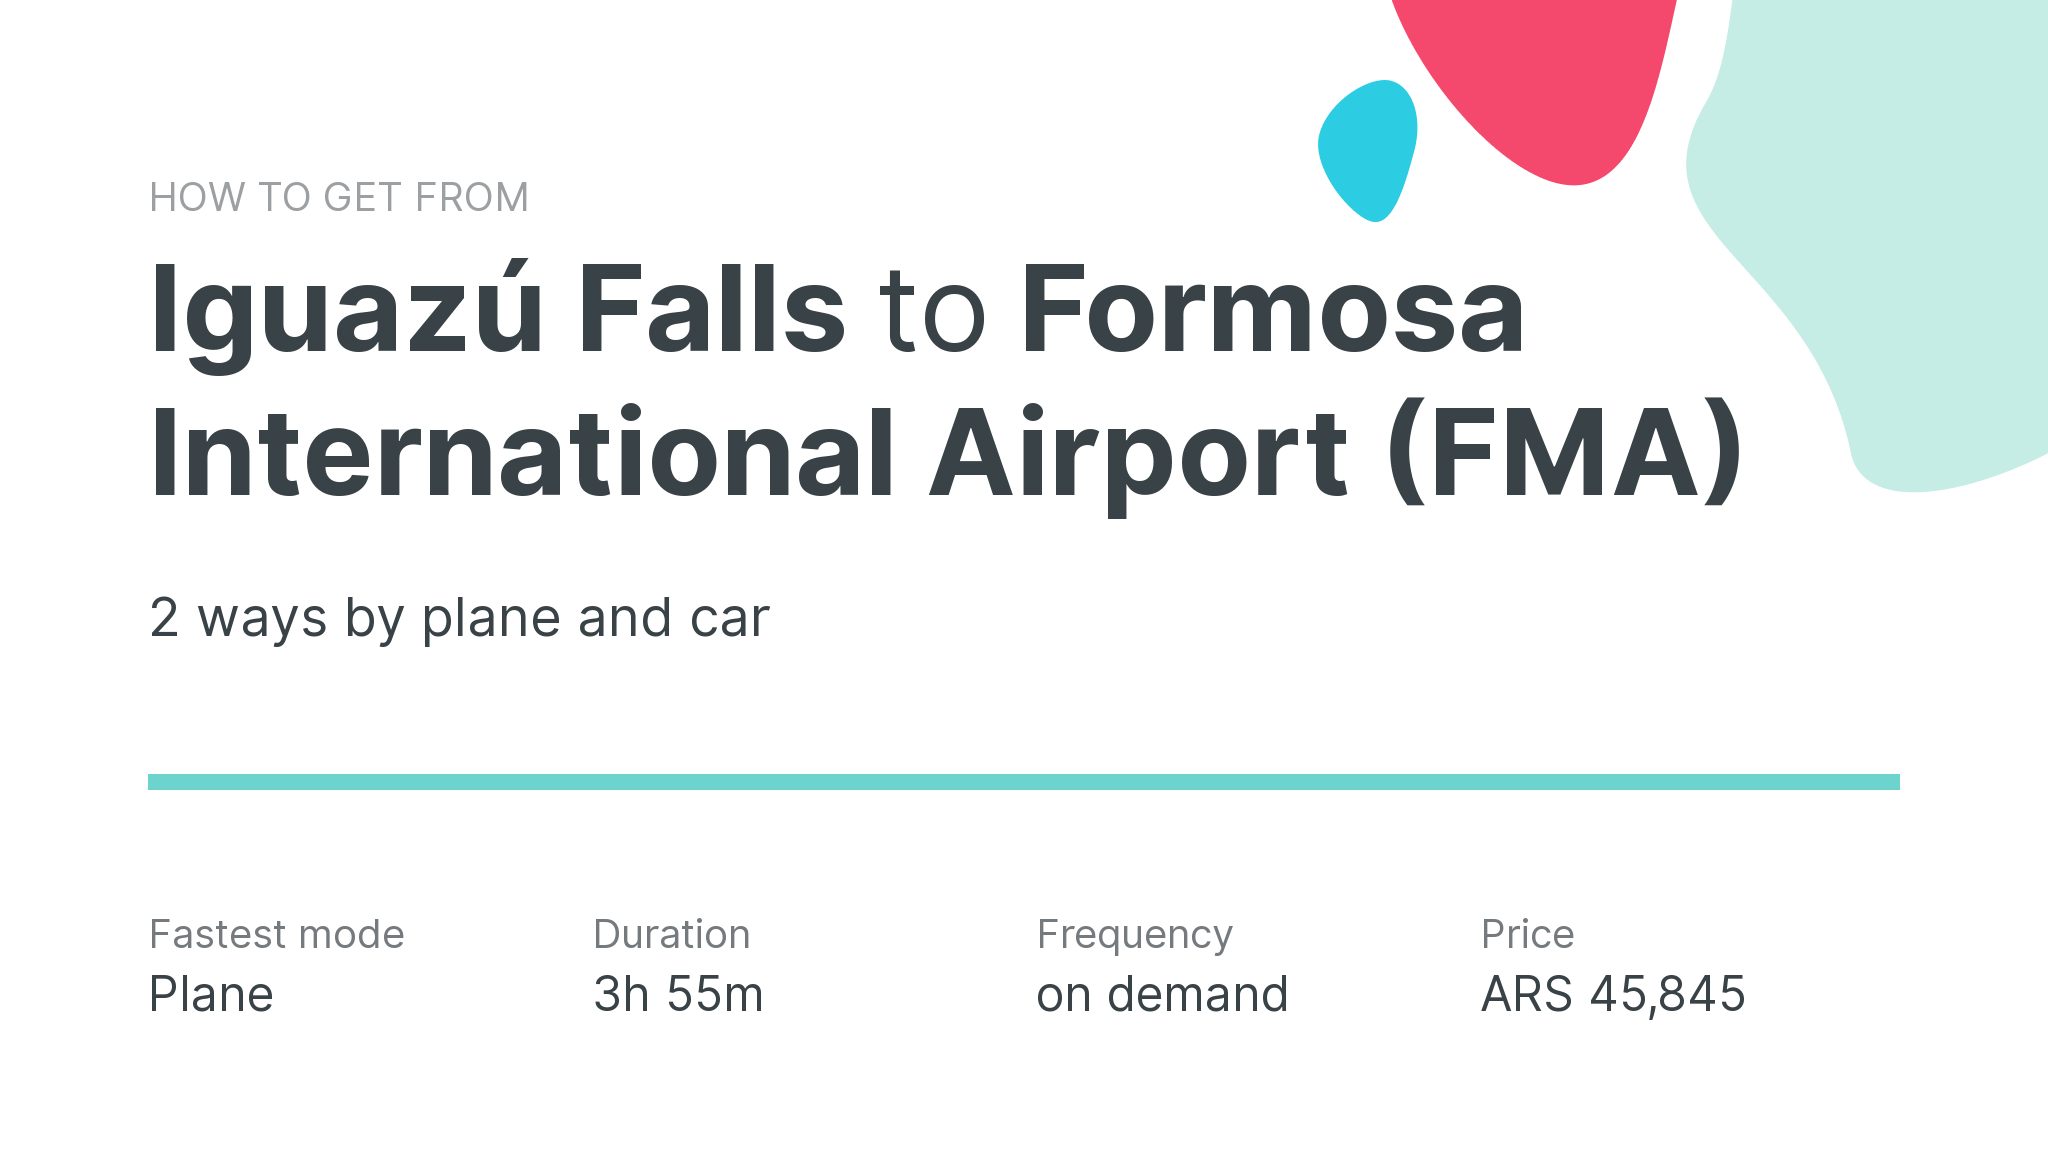 How do I get from Iguazú Falls to Formosa International Airport (FMA)